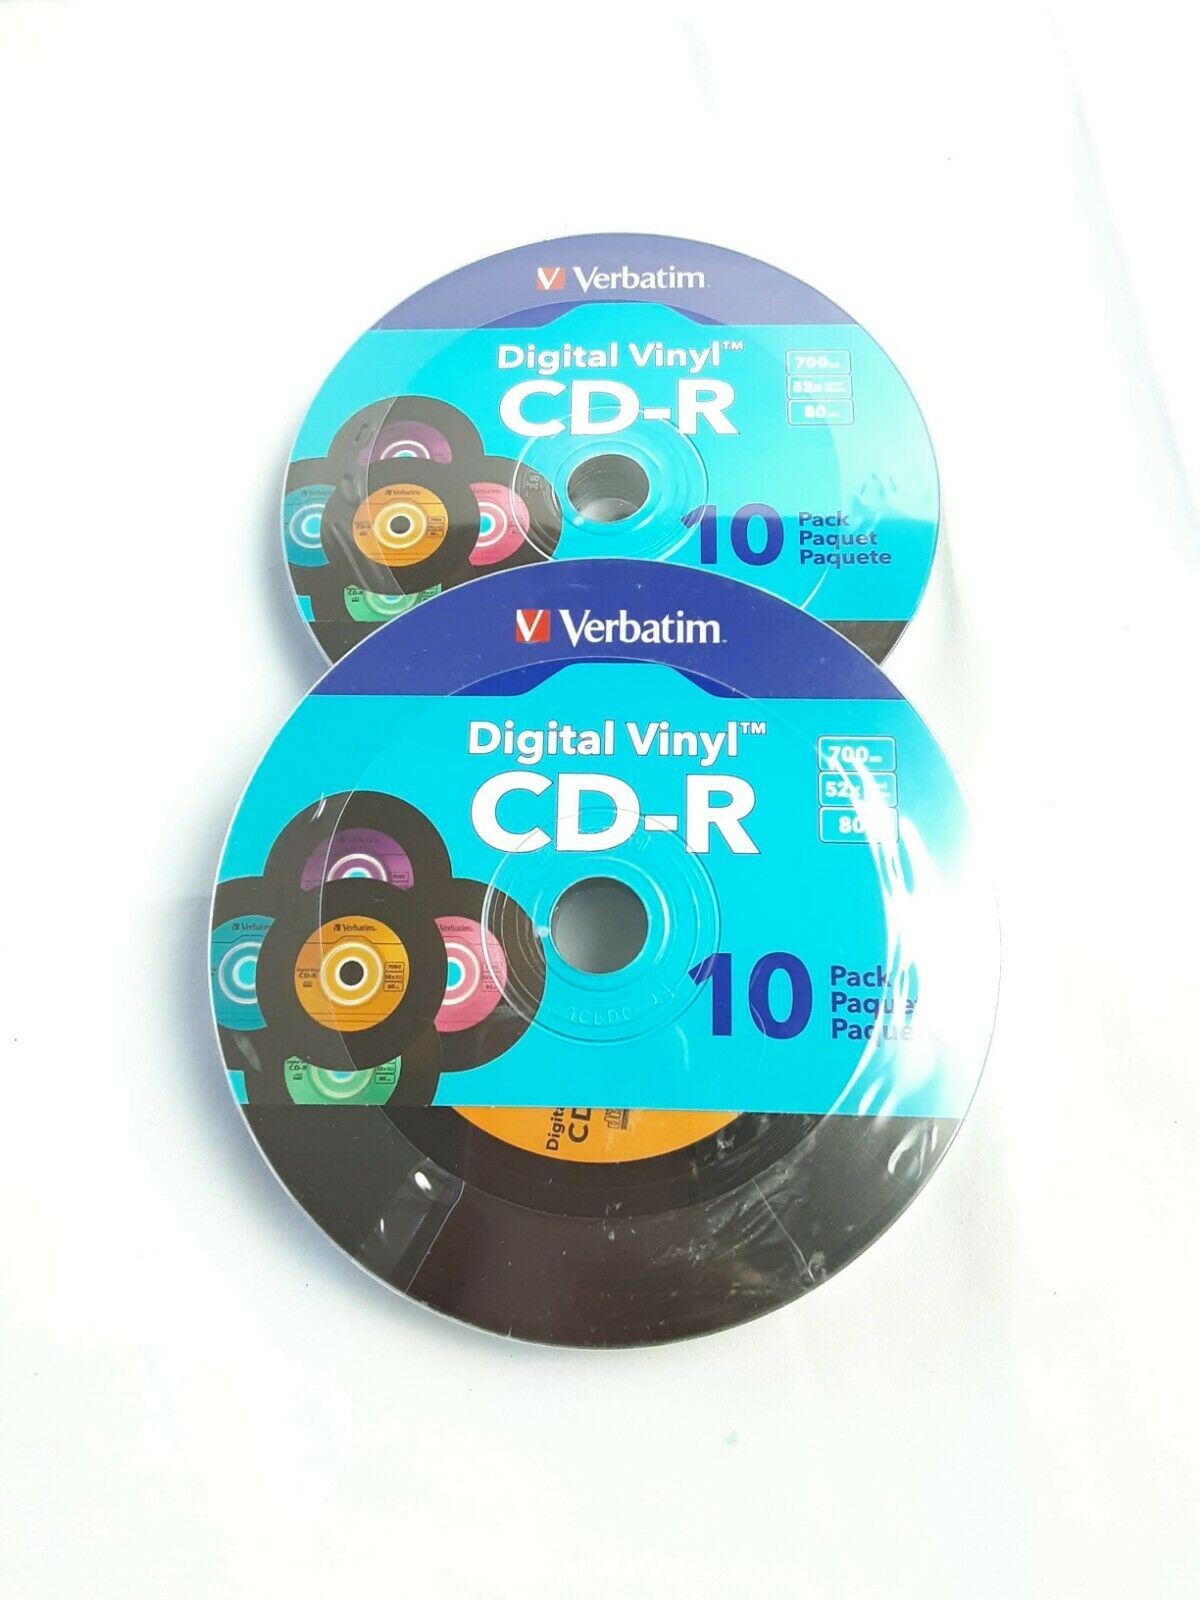 Lot Of 2 Verbatim Digital Vinyl Cd-r 80 Min 700mb Multi-color 2-10 Pks Total20